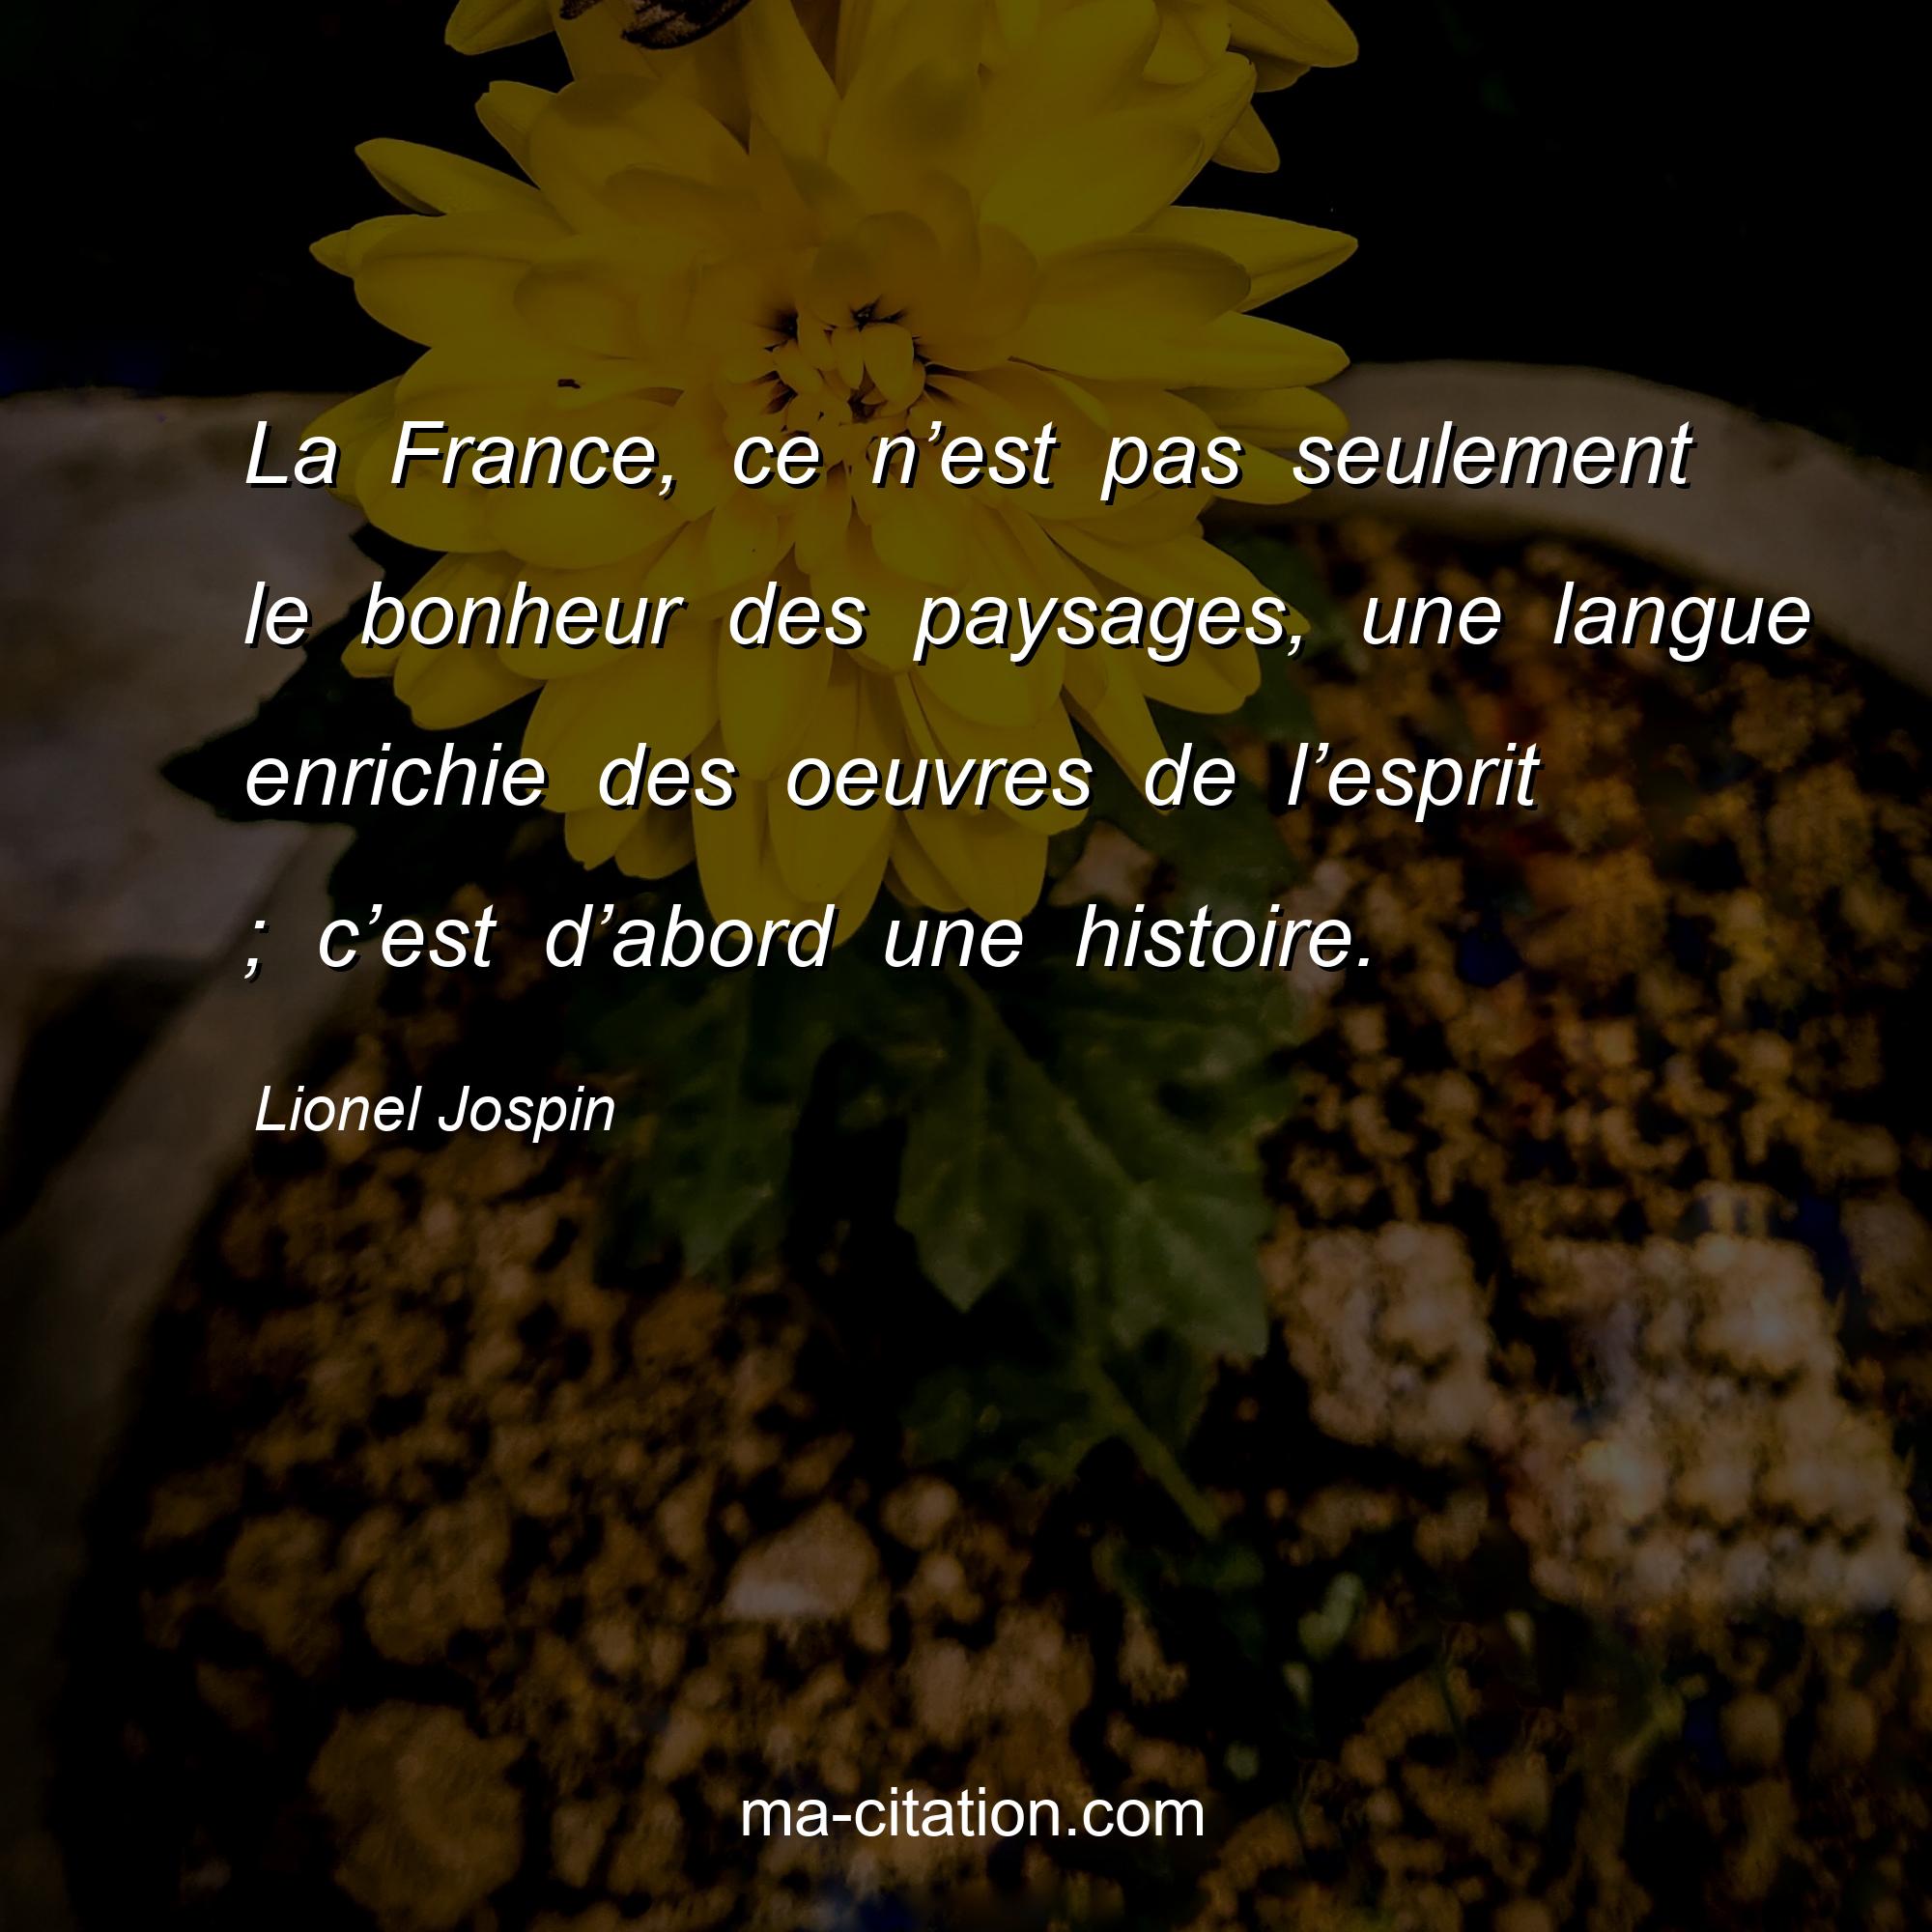 Lionel Jospin : La France, ce n’est pas seulement le bonheur des paysages, une langue enrichie des oeuvres de l’esprit ; c’est d’abord une histoire.